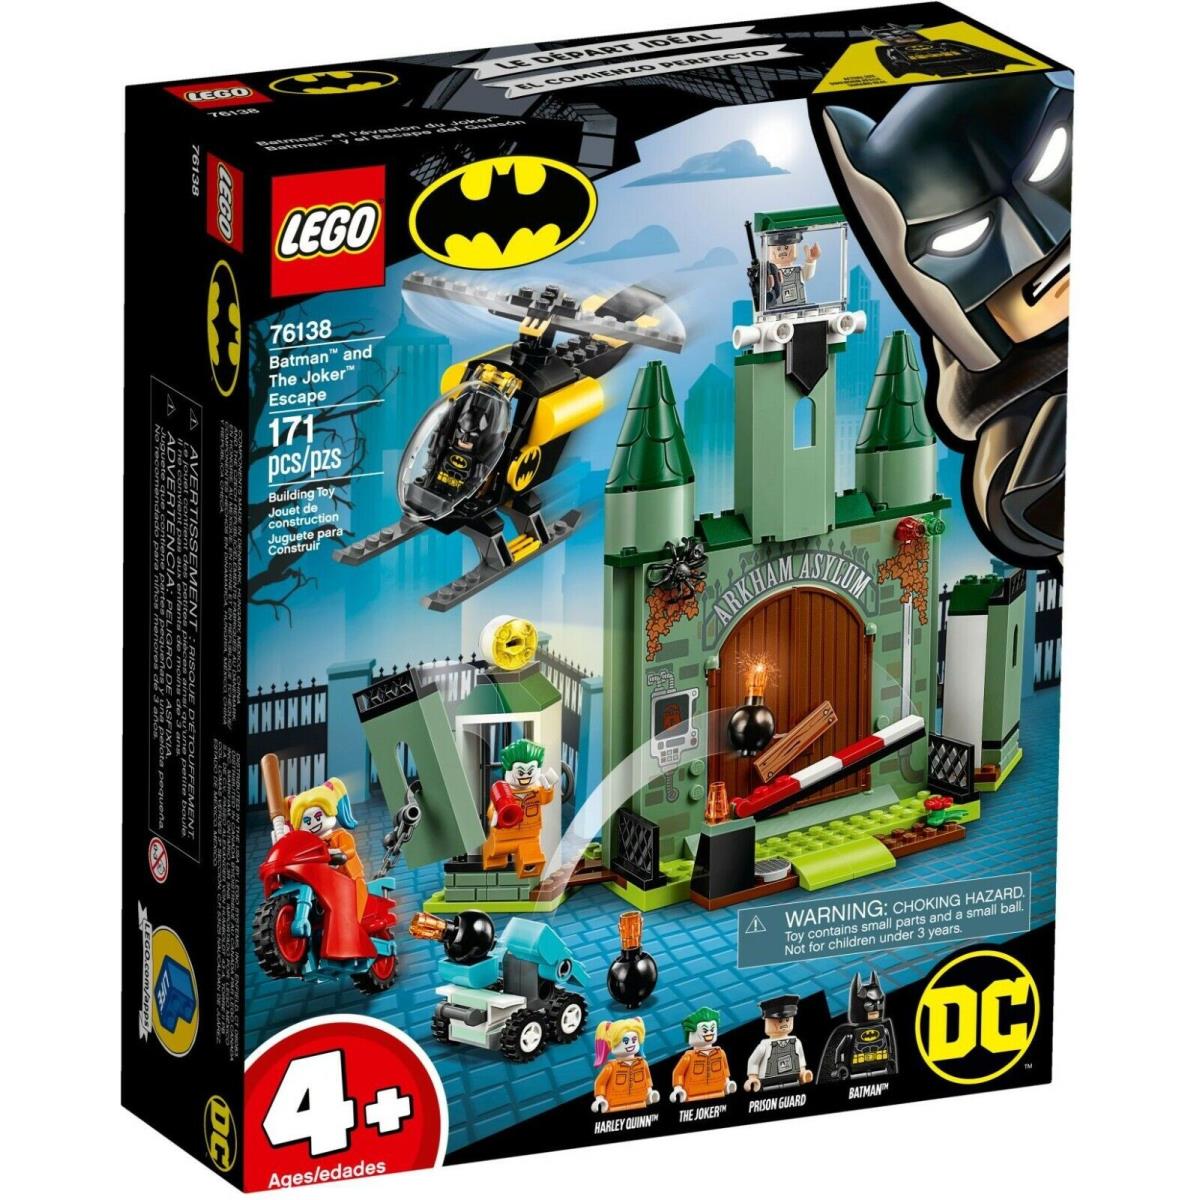 Lego DC Comics Super Heroes Batman and The Joker Escape Set 76138 Harley Quinn